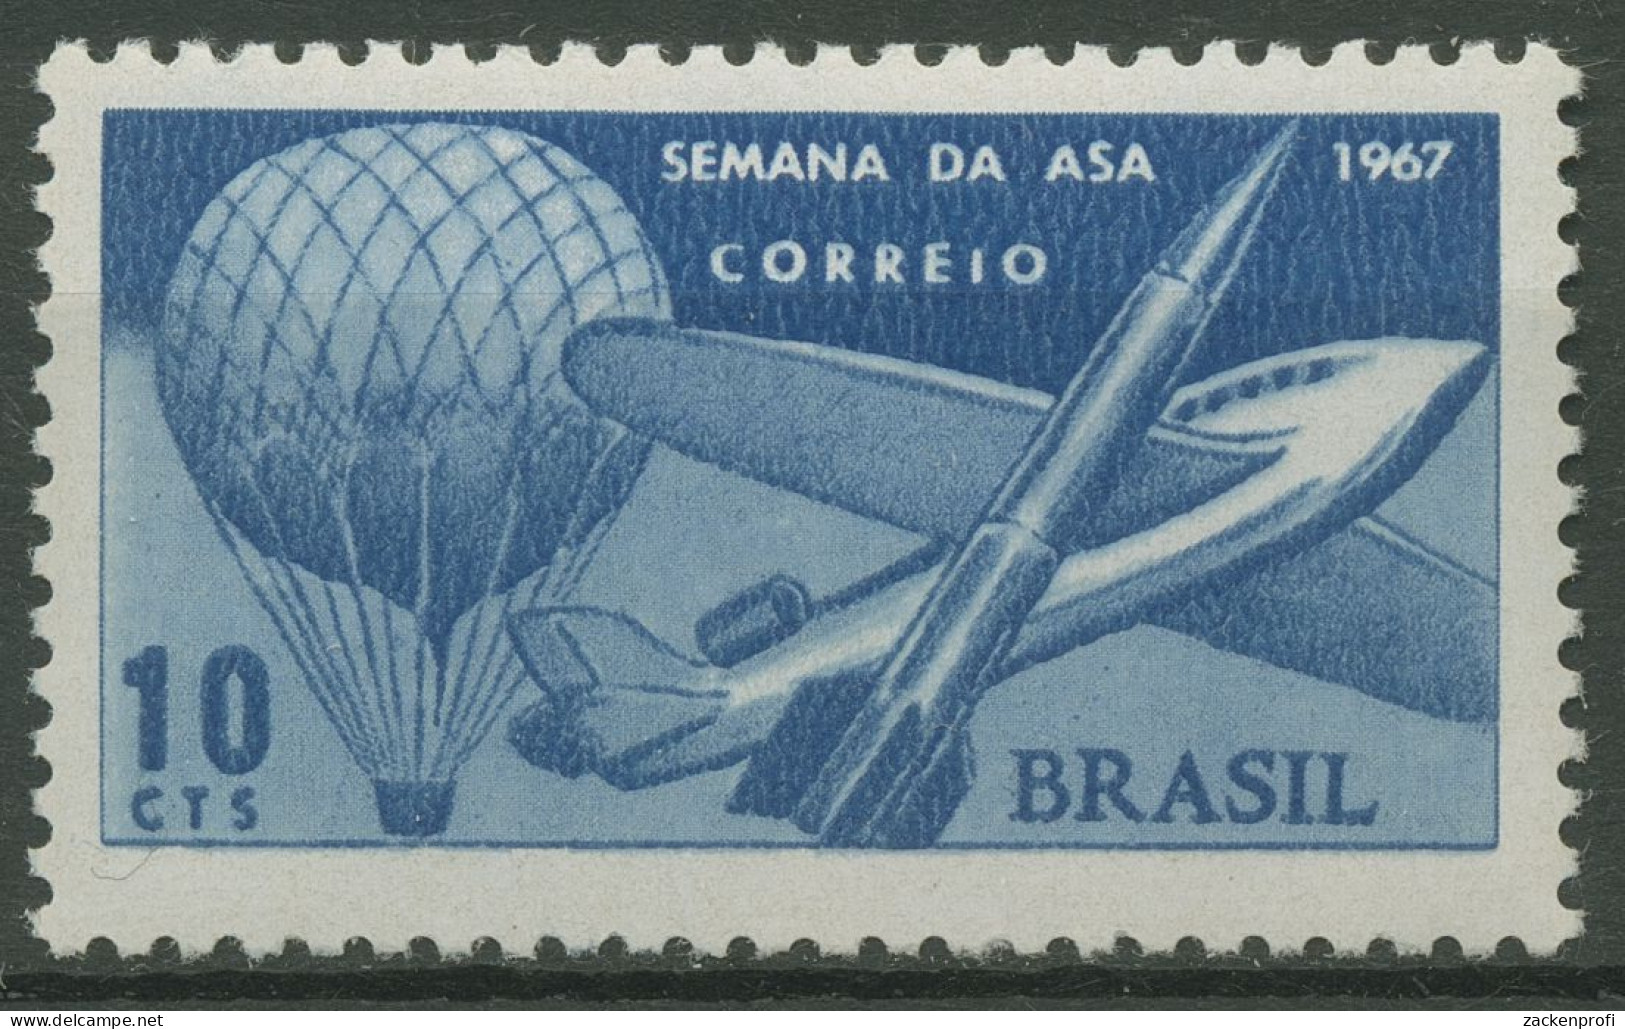 Brasilien 1967 Flugwoche Ballon Flugzeug Rakete 1151 Postfrisch - Nuovi